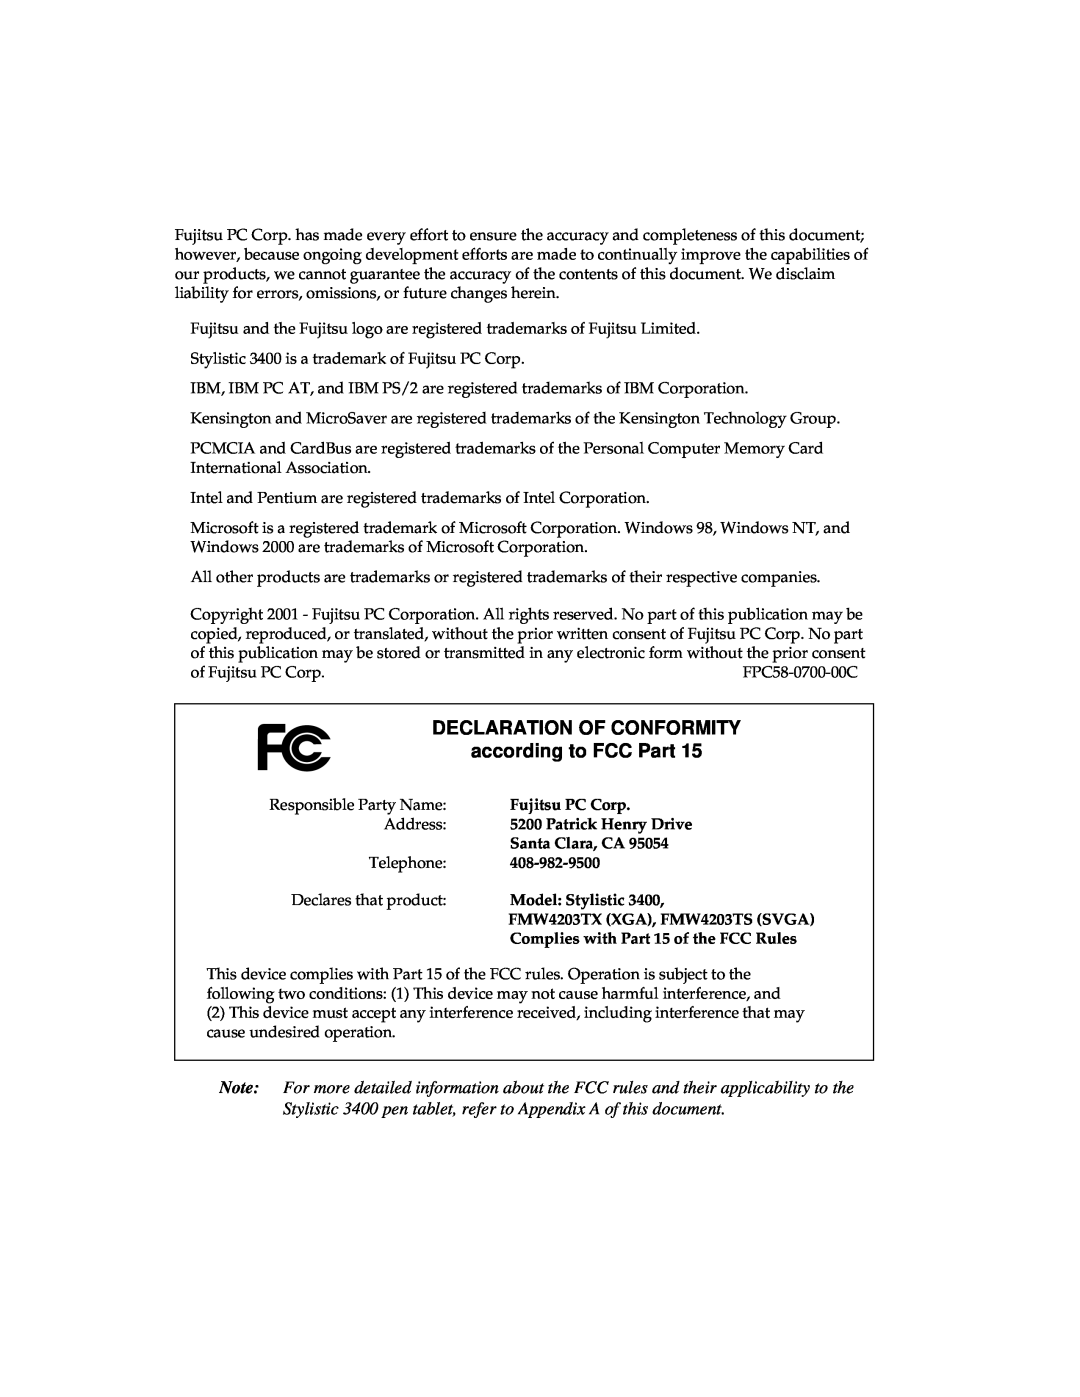 Fujitsu 3400 manual DECLARATION OF CONFORMITY according to FCC Part 